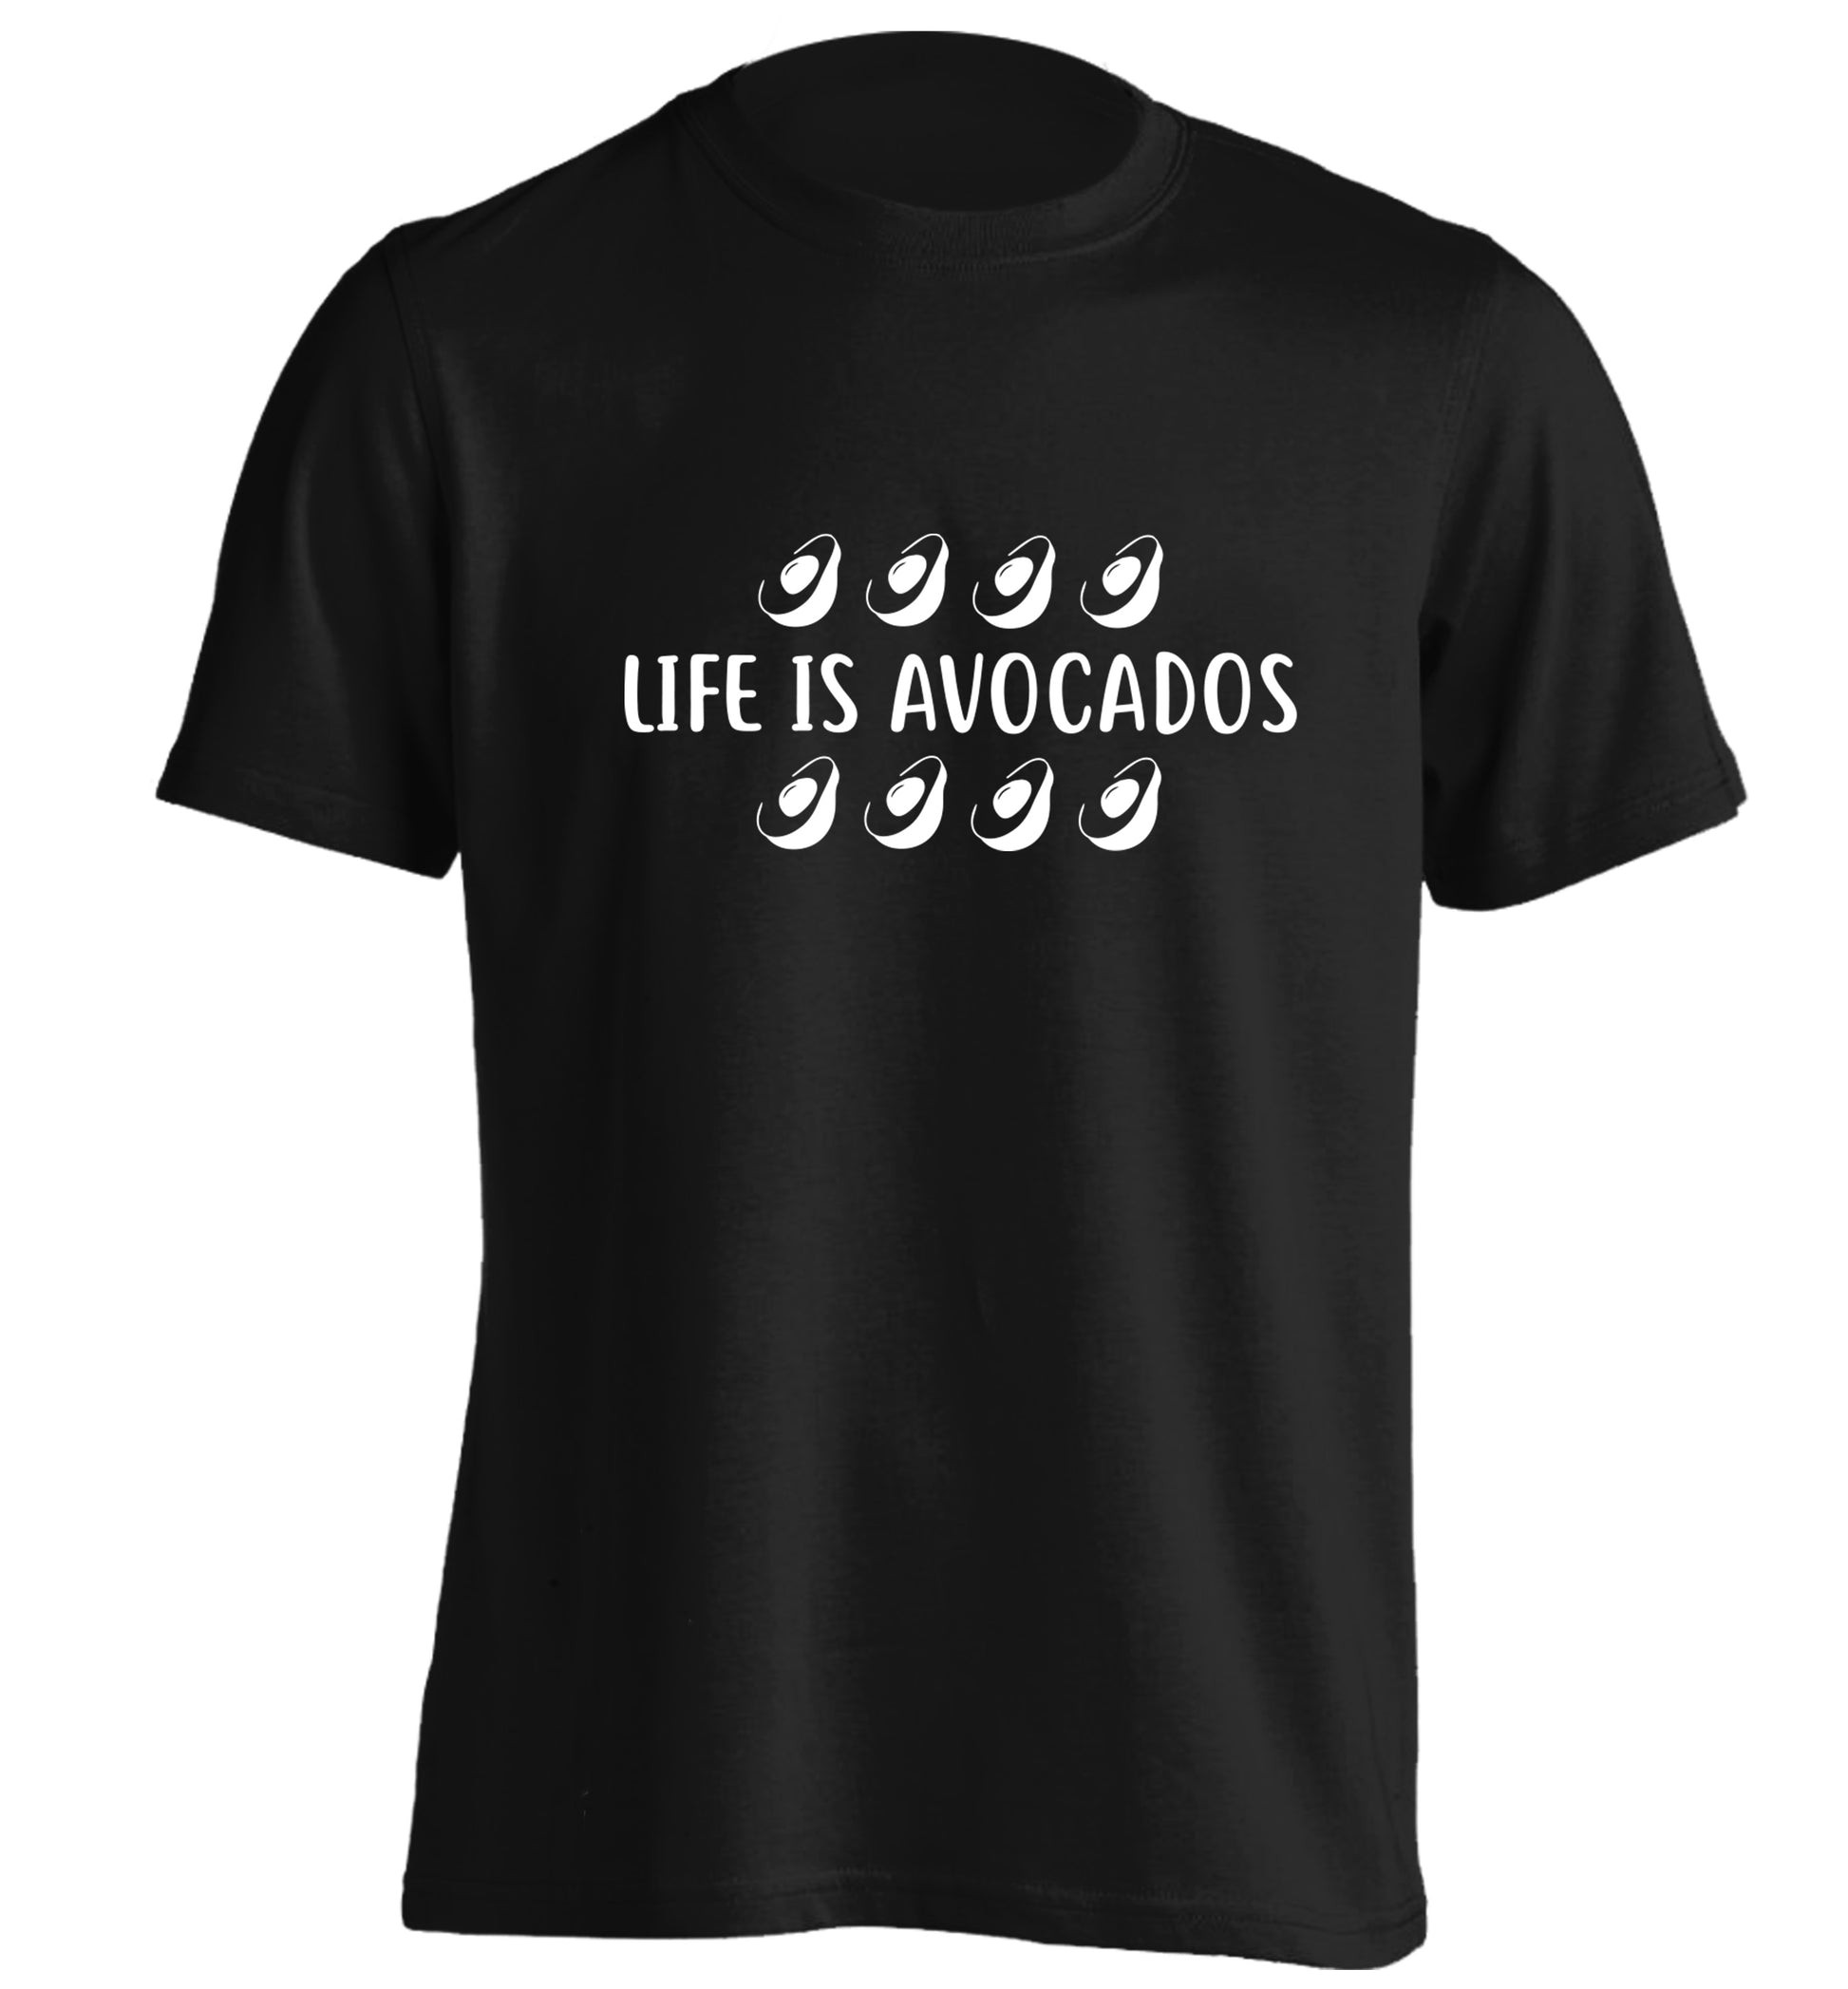 Life is avocados adults unisex black Tshirt 2XL